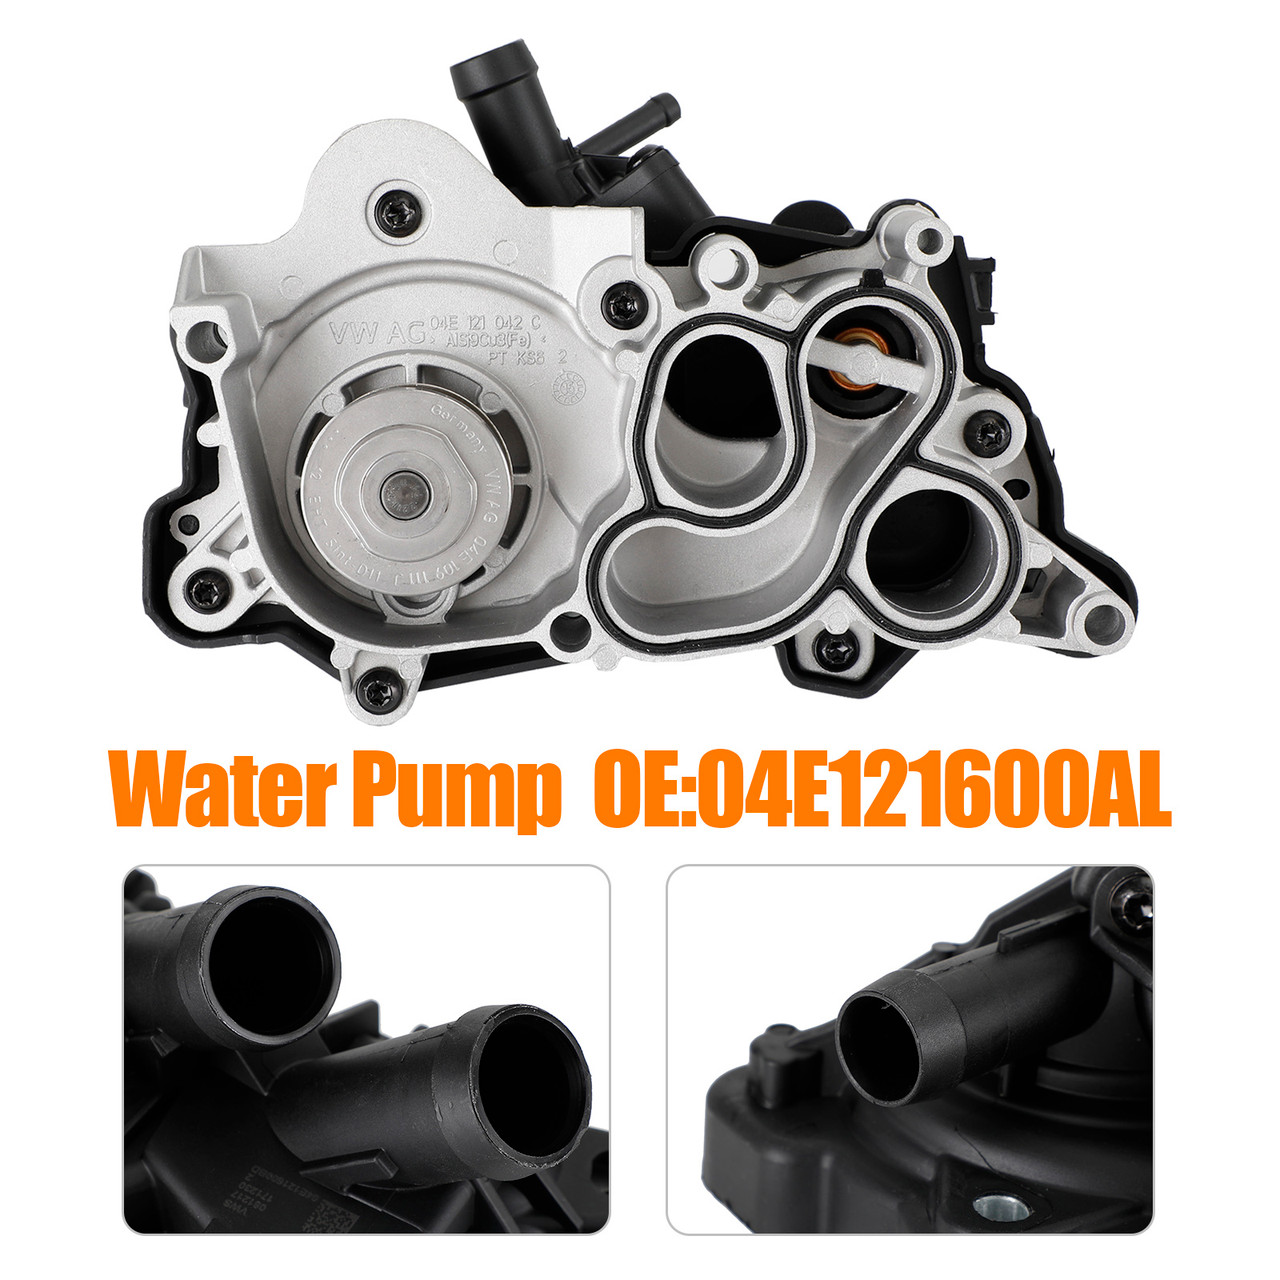 Coolant Pump Water Pump Housing Assembly for Audi A3 A1 04E121600AL 04E121600BD